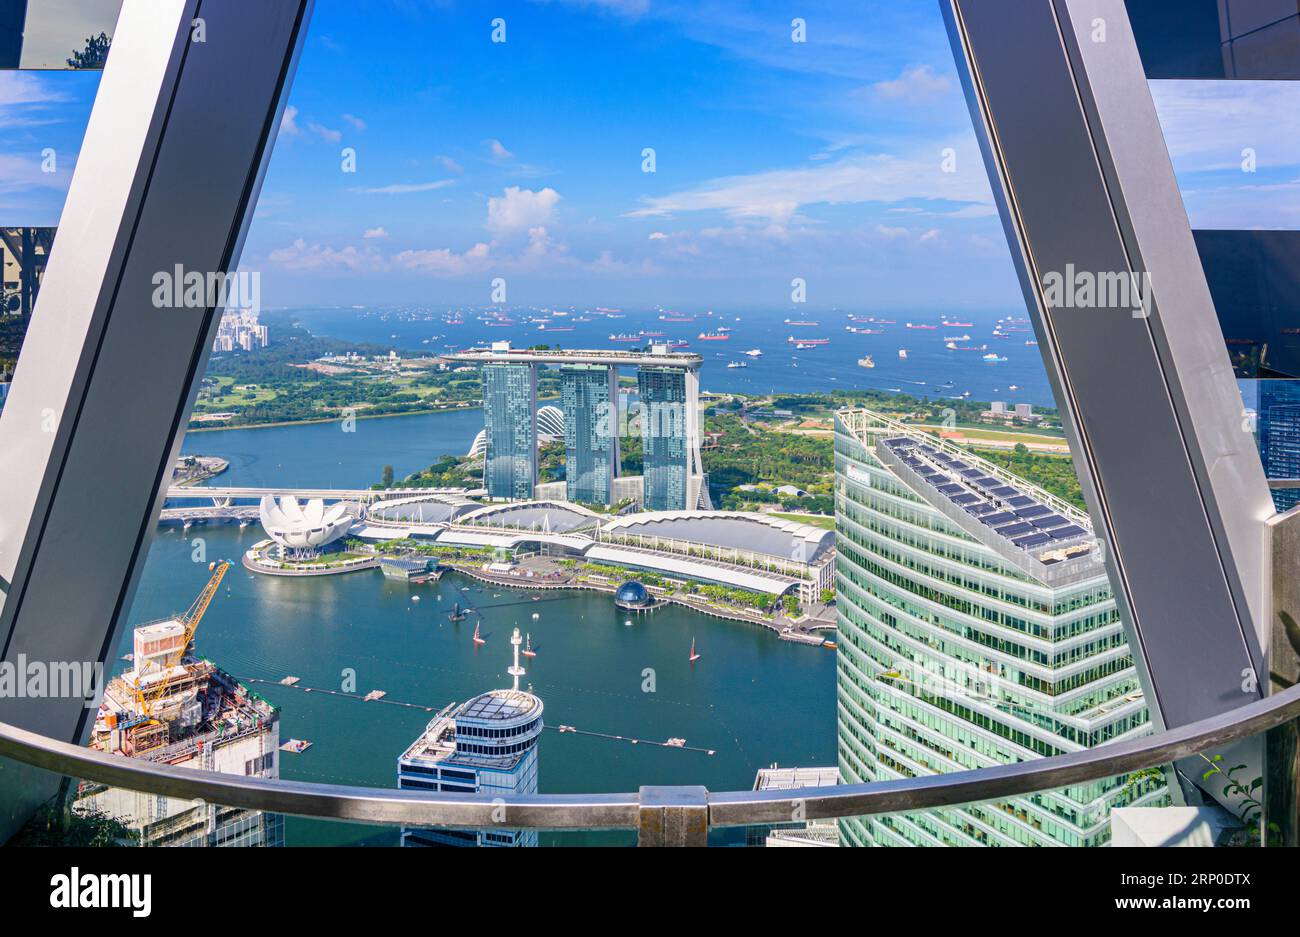 Blick auf die ikonische Marina Bay Sands, die Shoppes at Marina Bay Sands und das ArtScience Museum in Marina Bay, Singapur Stockfoto